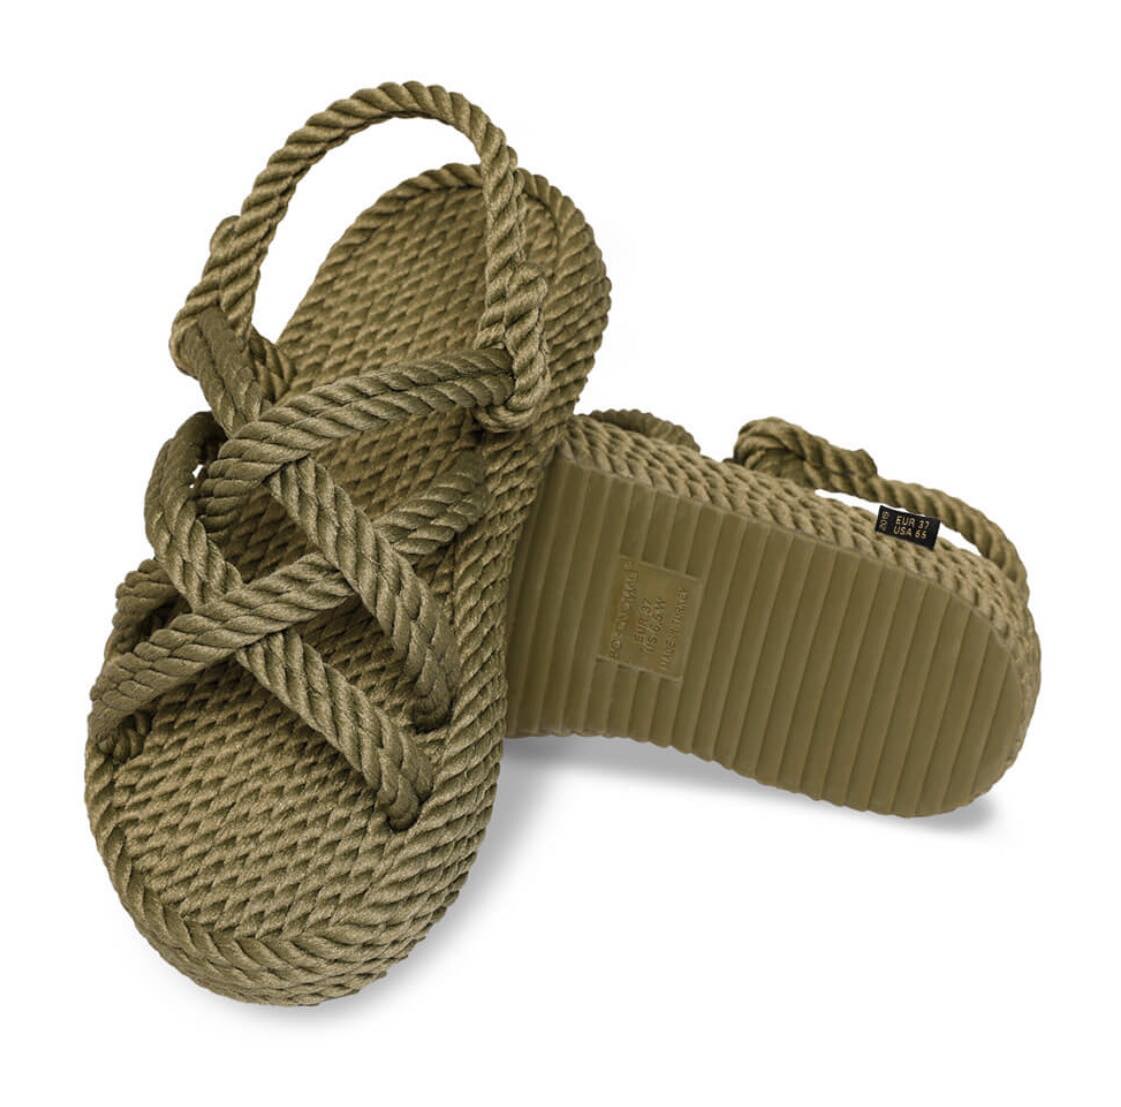 Bodrum Platform Rope Sandal – Khaki